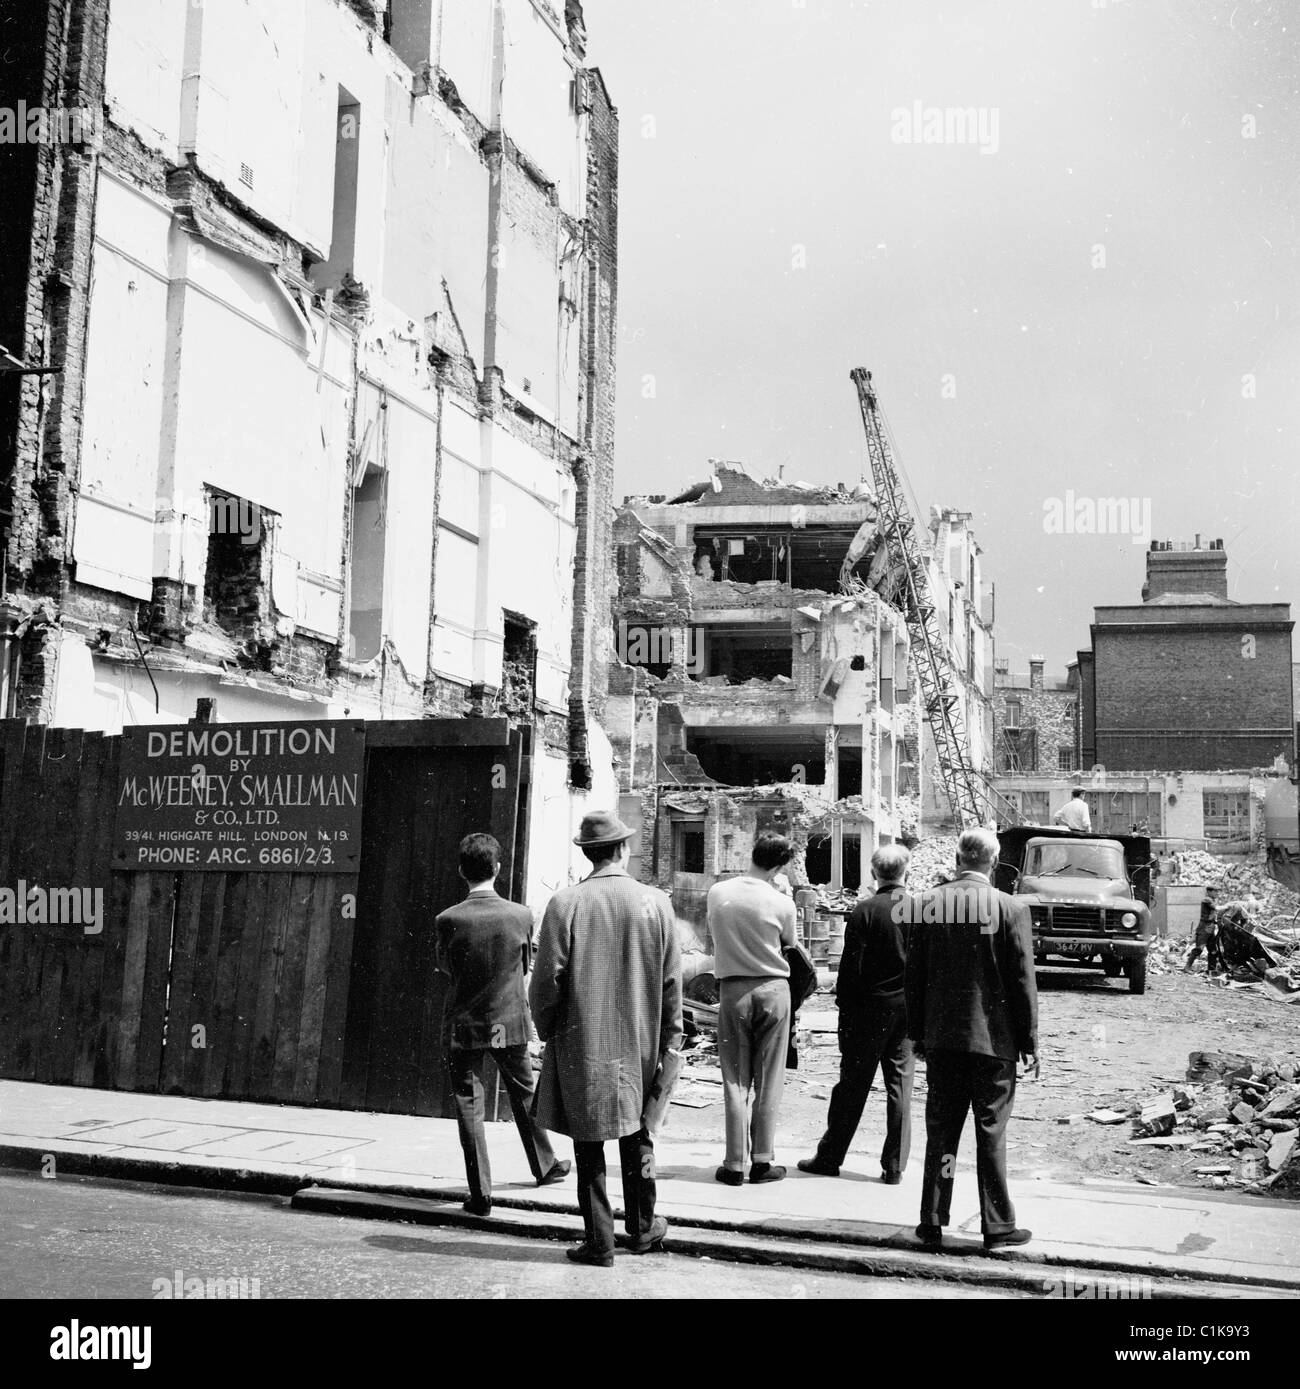 1950er Jahre London. Gruppe der Männer stehen auf einem Bürgersteig gerade ein Abriss eines Gebäudes in diesem historischen Bild statt. Stockfoto